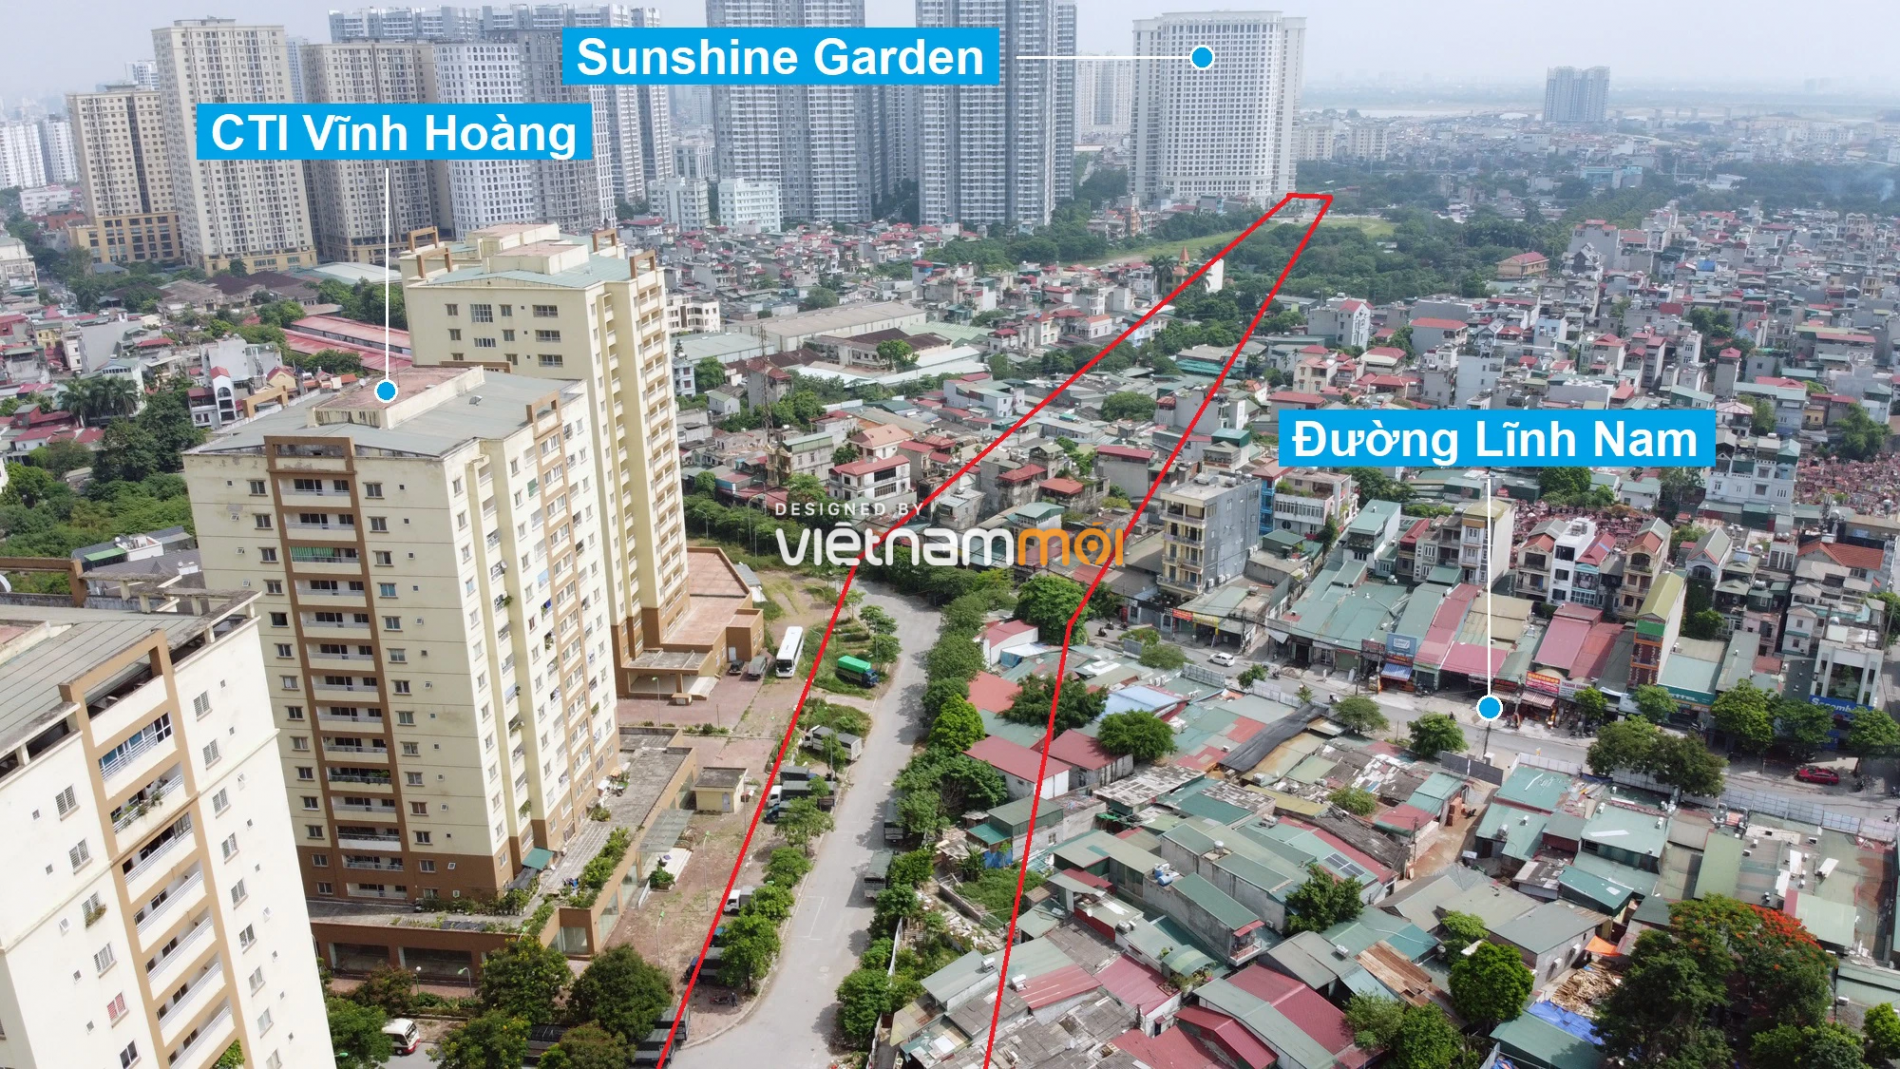 Những khu đất sắp thu hồi để mở đường ở quận Hoàng Mai, Hà Nội (phần 4) - Ảnh 8.